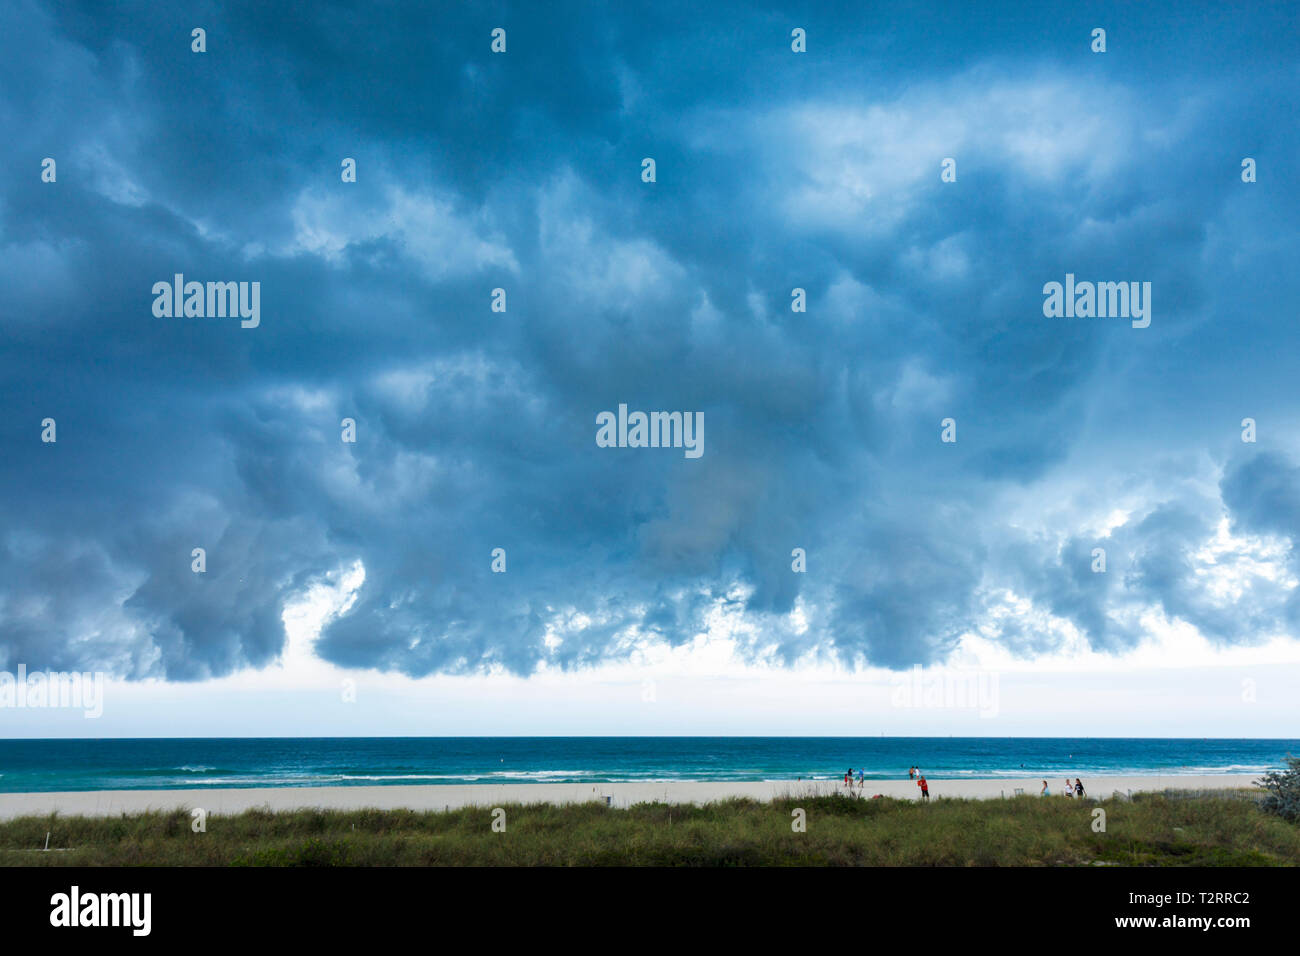 Miami Beach Florida,Océan Atlantique,eau,front froid,météo,tempête,orageux,gris,nuages,nuageux,menaçant,sinistre,ciel sombre,FL090417031 Banque D'Images